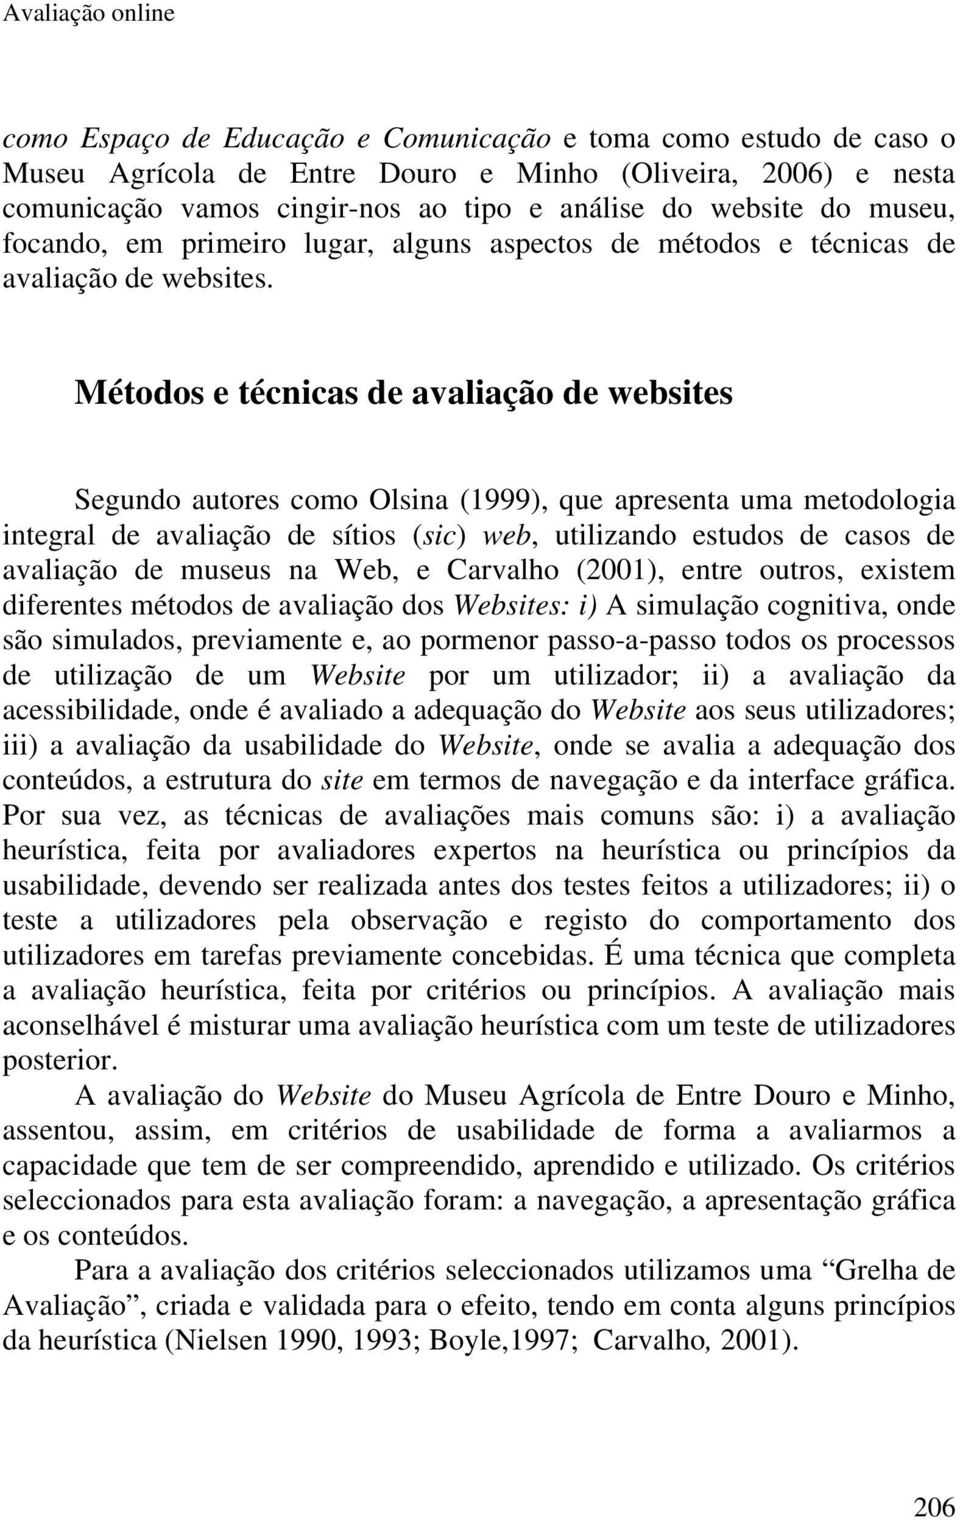 Métodos e técnicas de avaliação de websites Segundo autores como Olsina (1999), que apresenta uma metodologia integral de avaliação de sítios (sic) web, utilizando estudos de casos de avaliação de